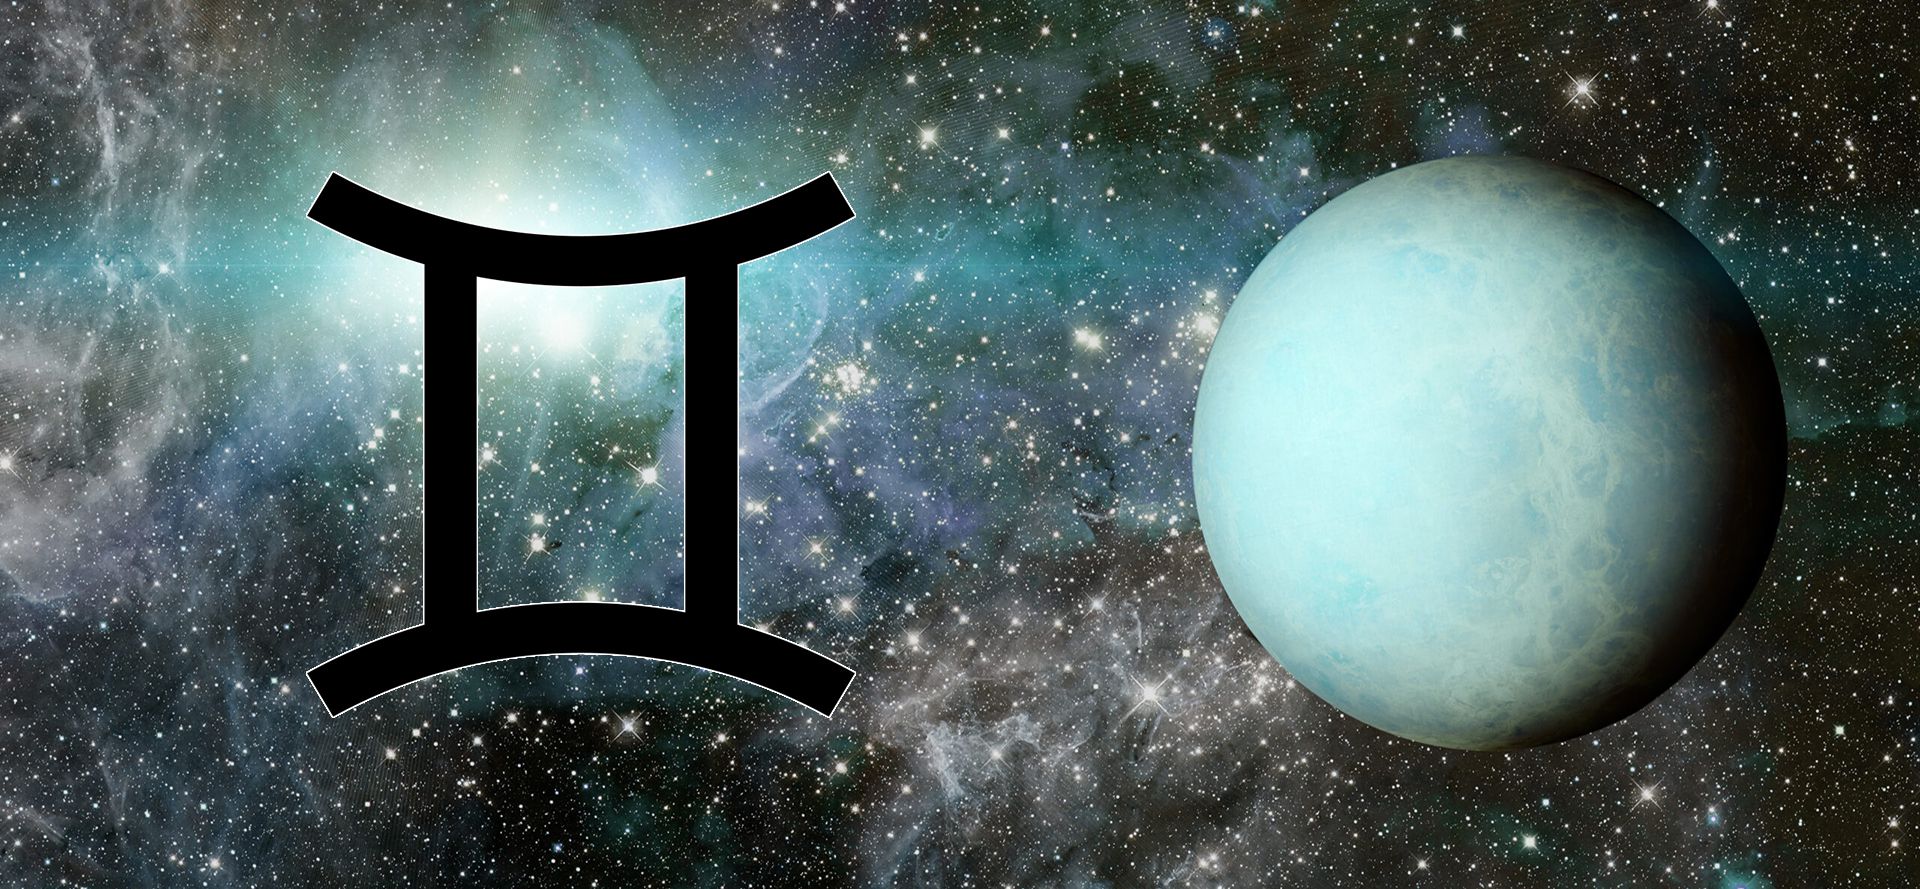 Uranus and gemini sign.